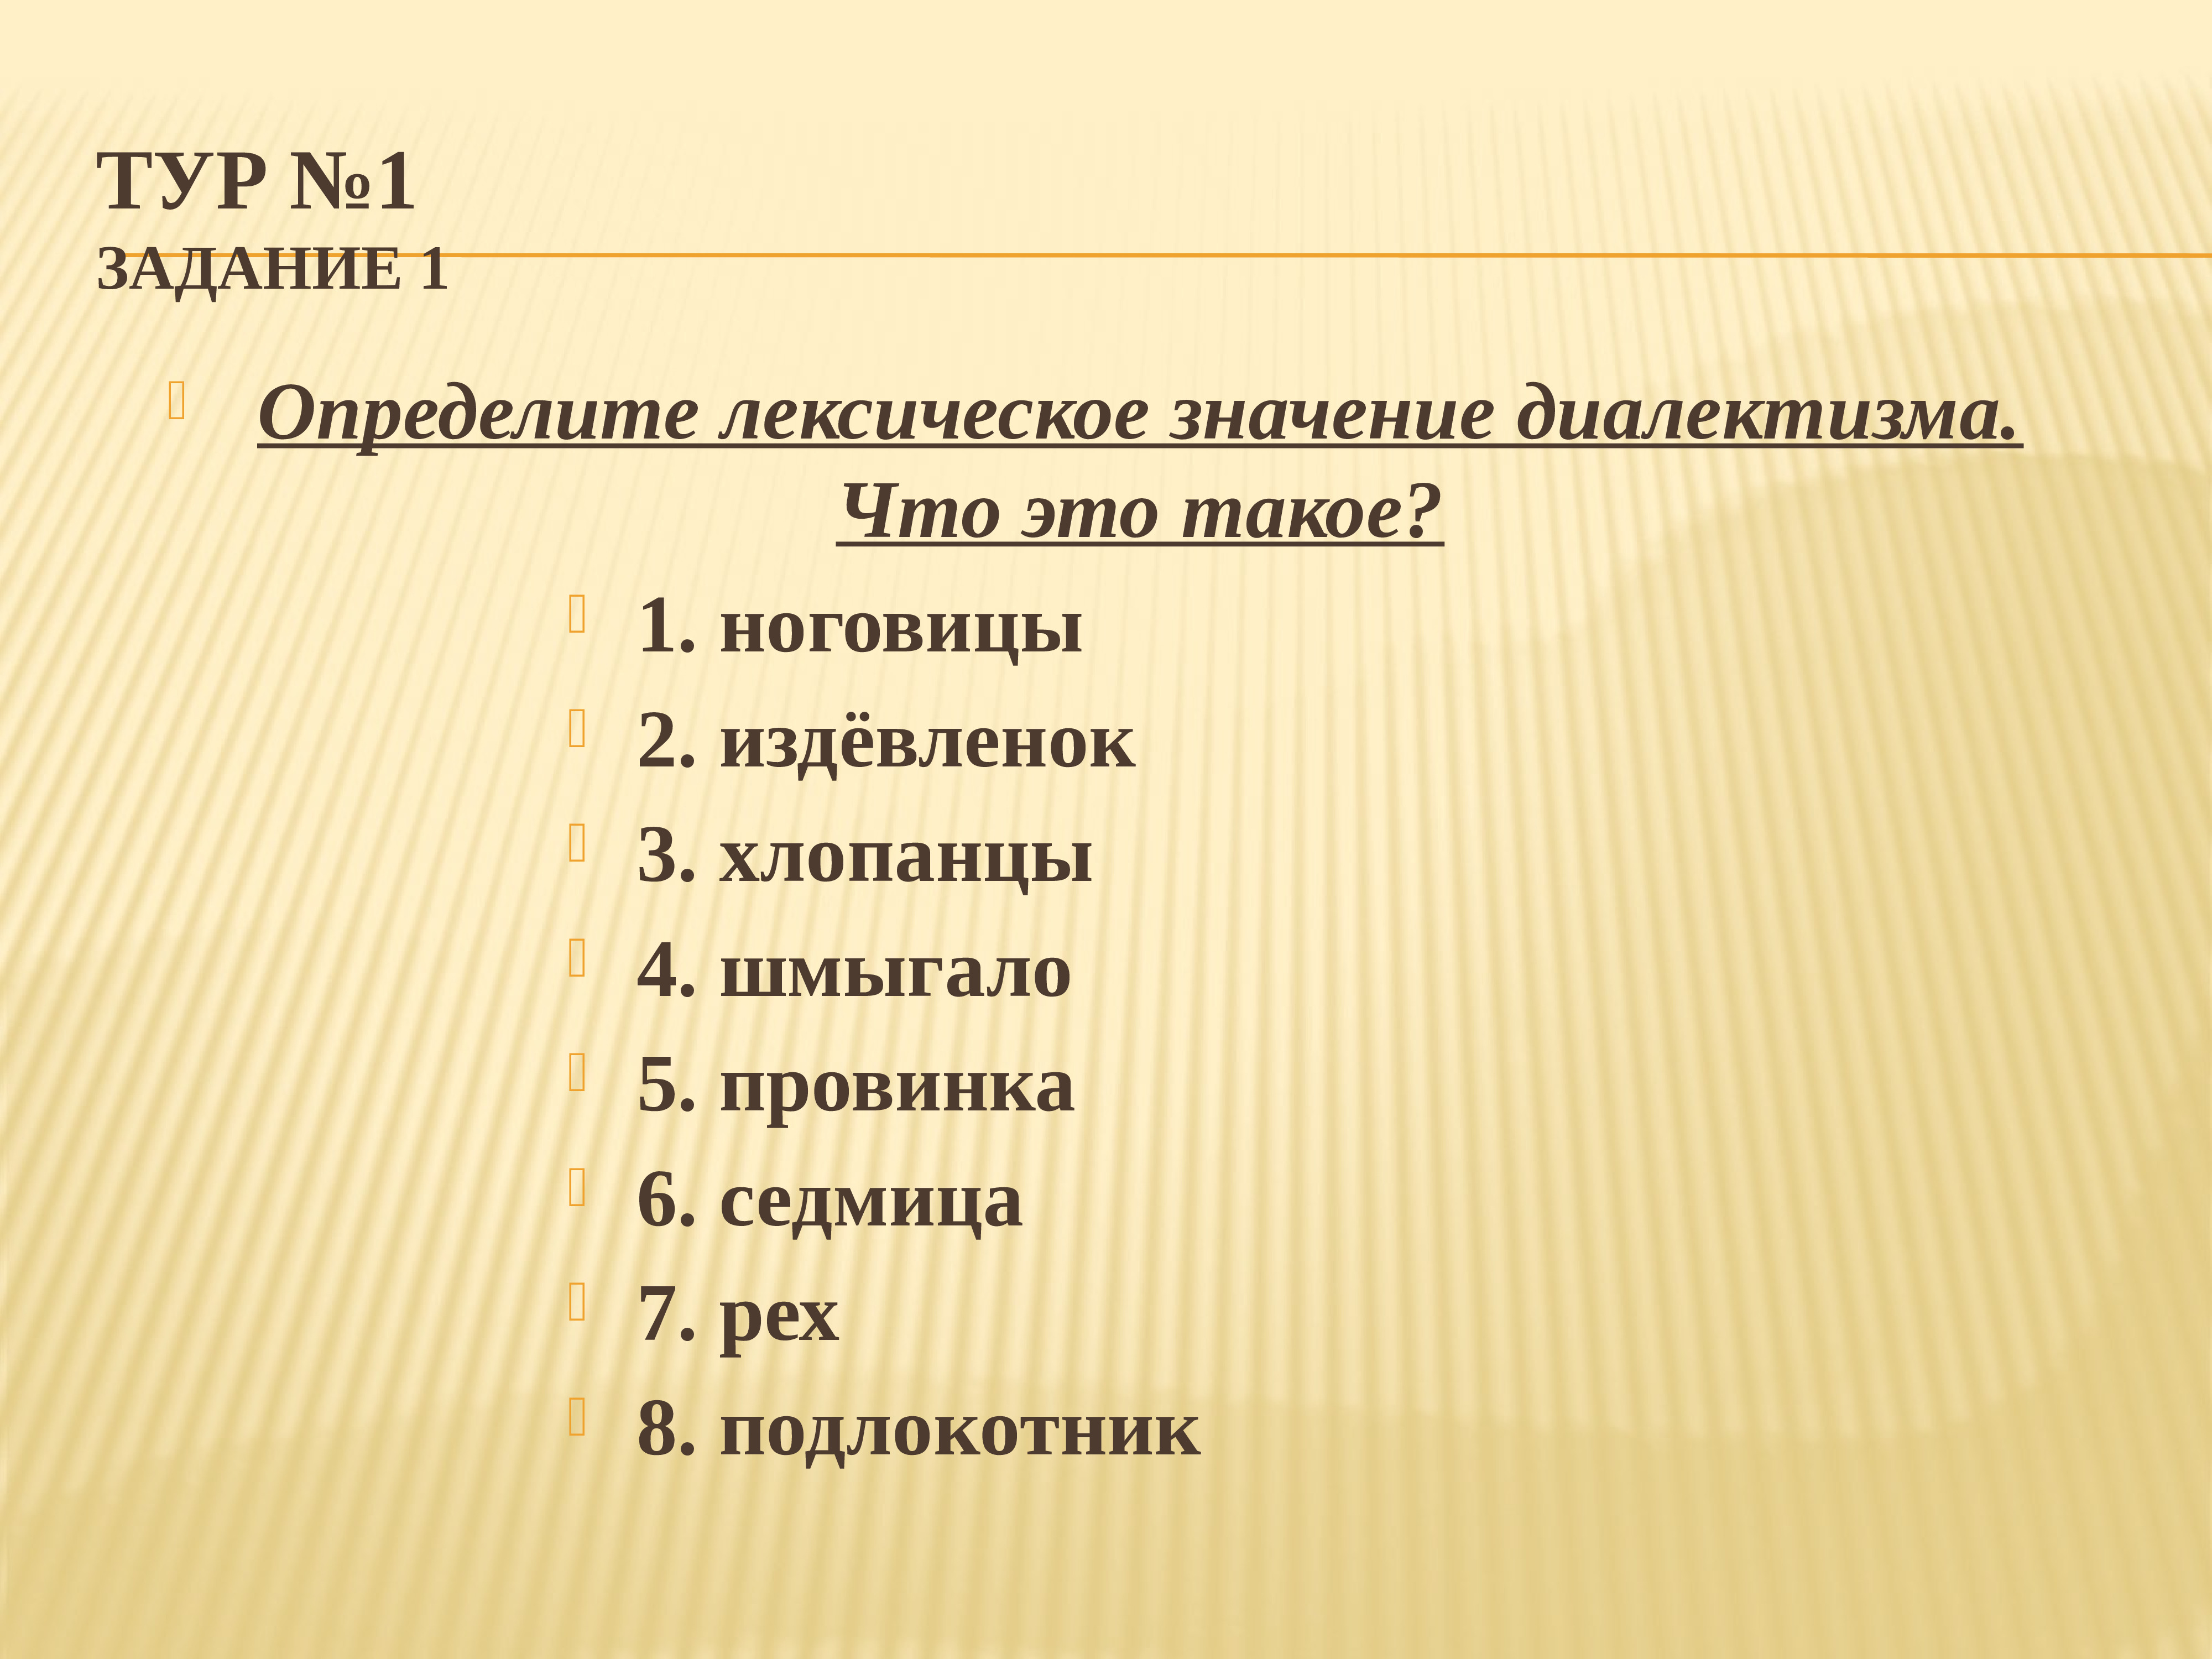 Задания для викторины по русскому языку